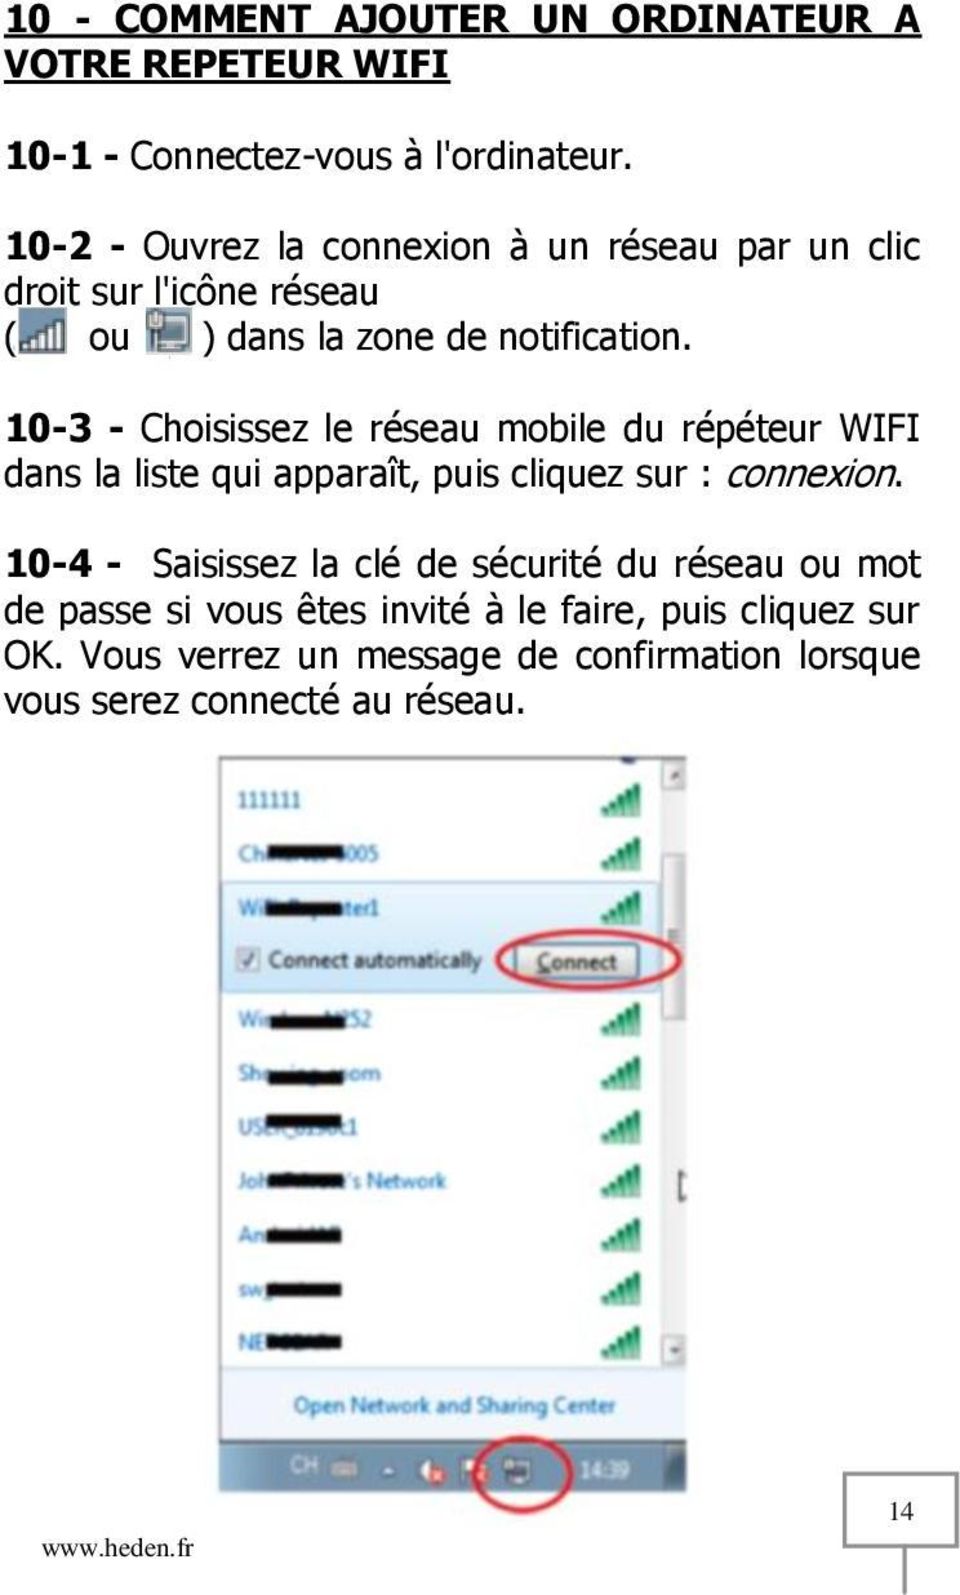 10-3 - Choisissez le réseau mobile du répéteur WIFI dans la liste qui apparaît, puis cliquez sur : connexion.